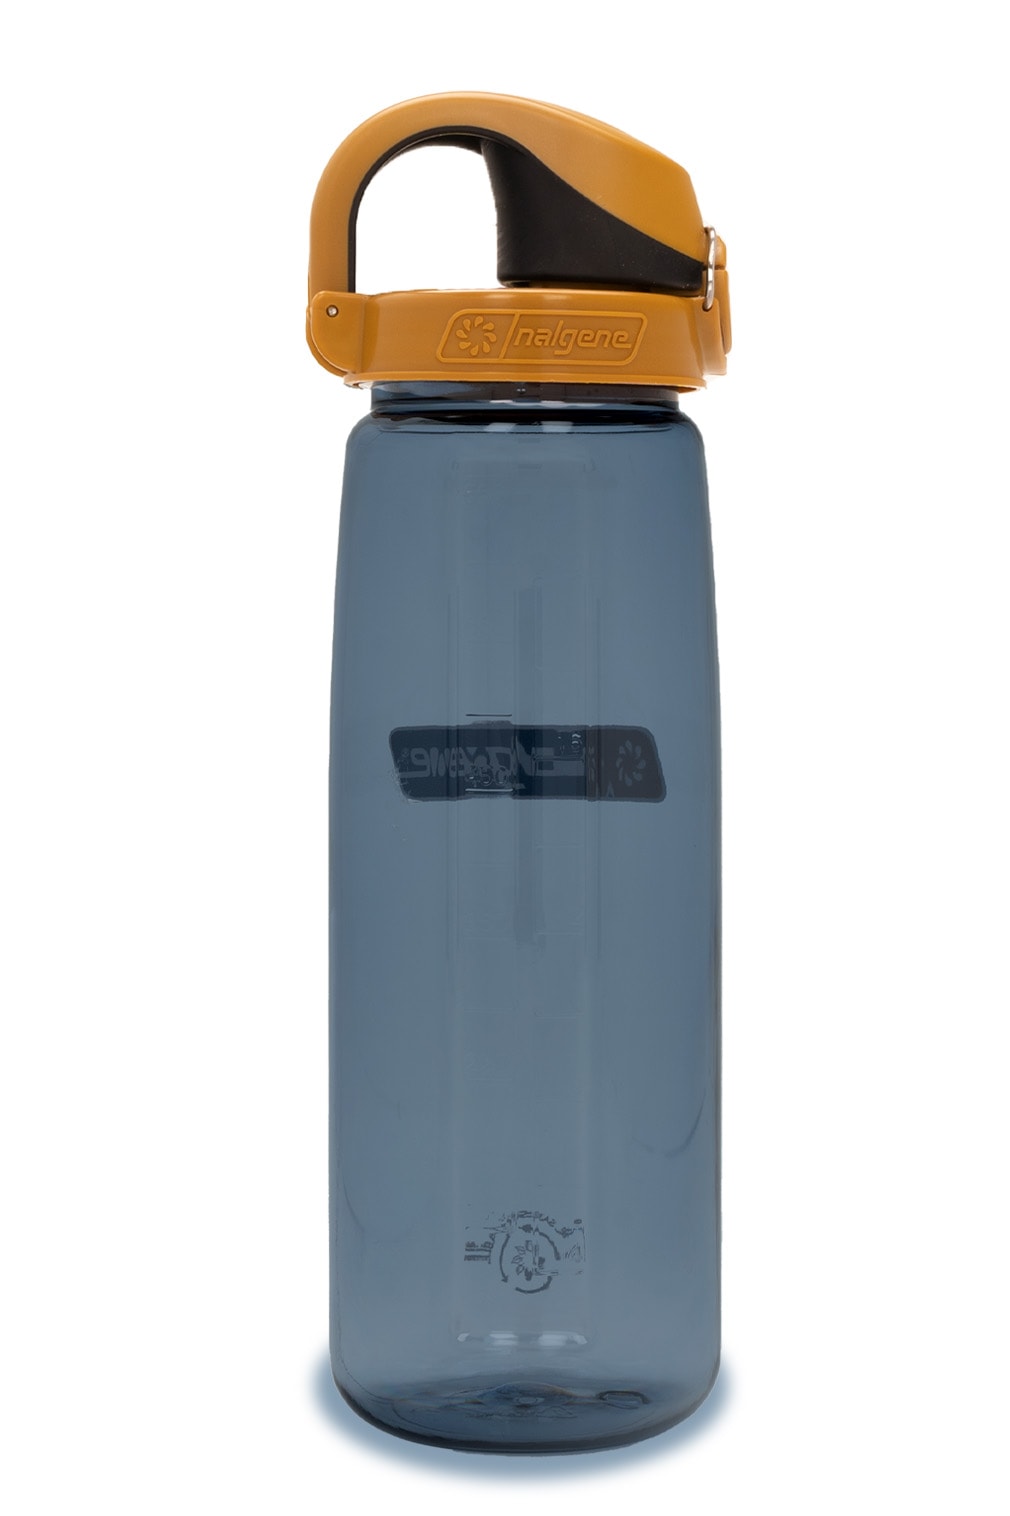 Intulon Compact Twist Beverage Bottle Opener and Tightener - Bottle Cap  Gripp